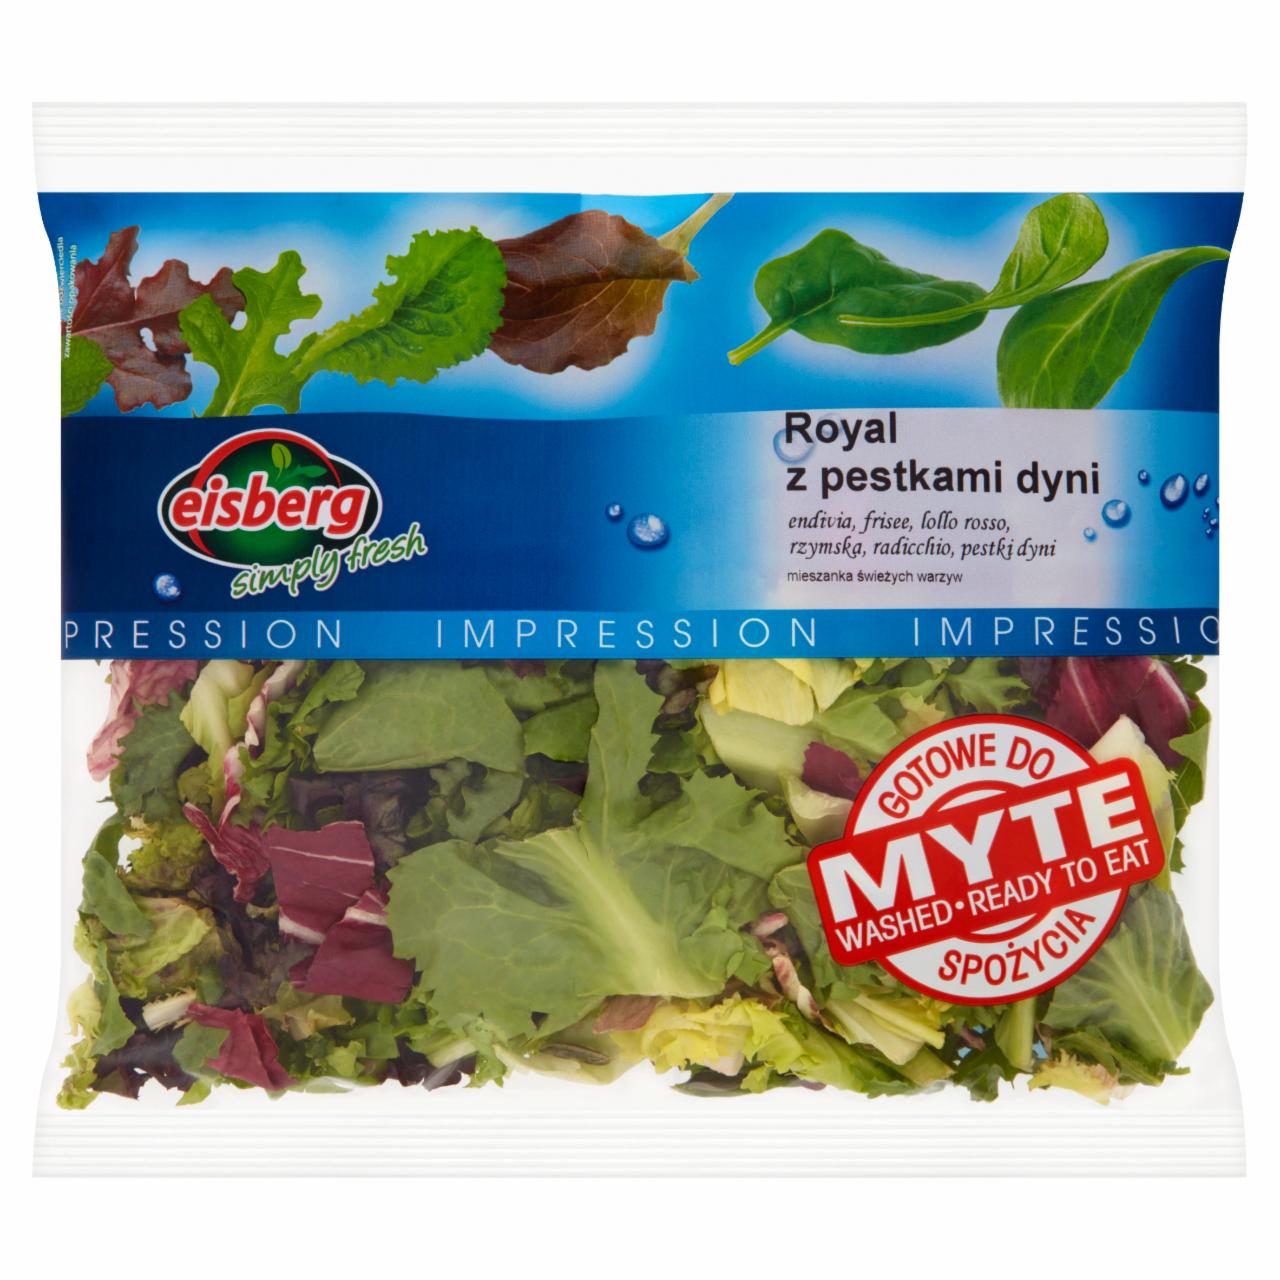 Zdjęcia - Eisberg Impression Royal mix z pestkami dyni Mieszanka świeżych warzyw 140 g